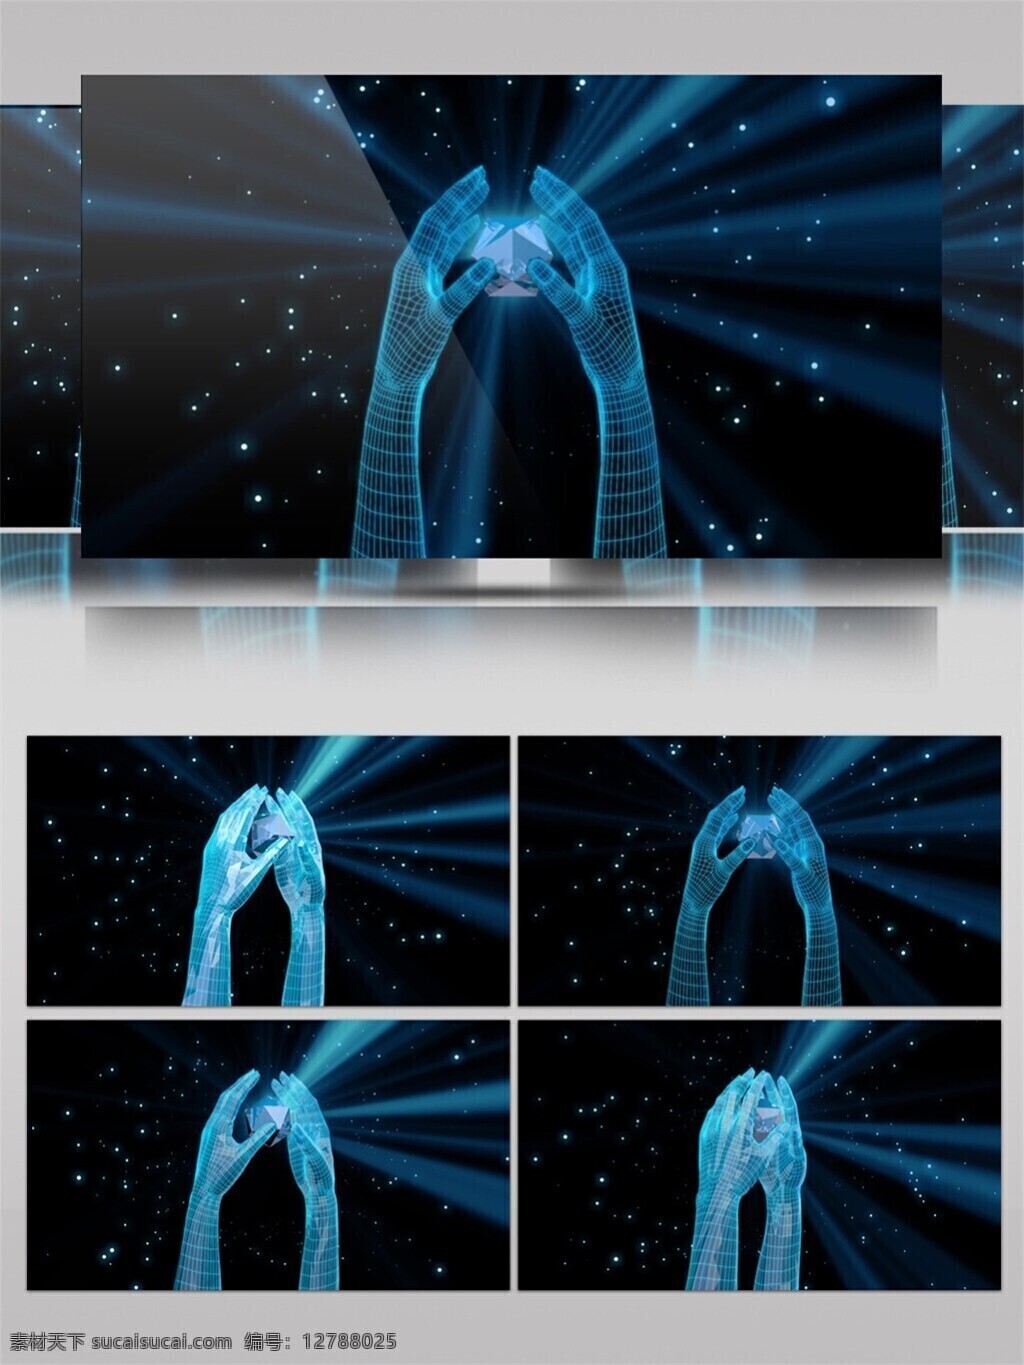 蓝光 魔术 手 动态 视频 光束 蓝色 激光 视觉享受 手机壁纸 光斑散射